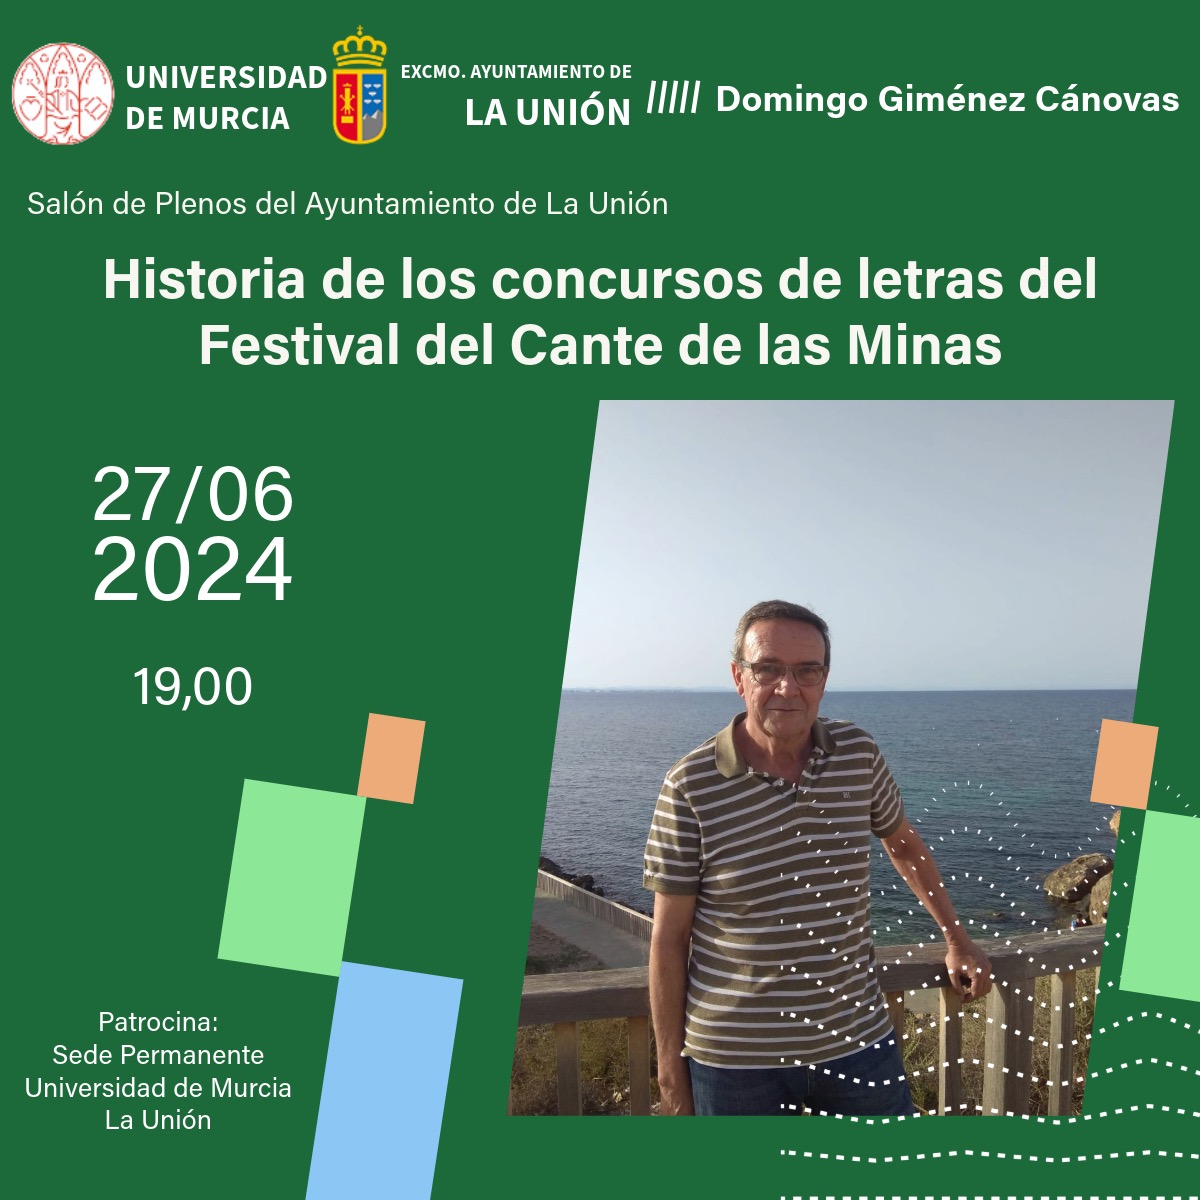 Historia de los concursos de letras del Festival del Cante de las Minas (27/06/24 a las 19:00 h.)